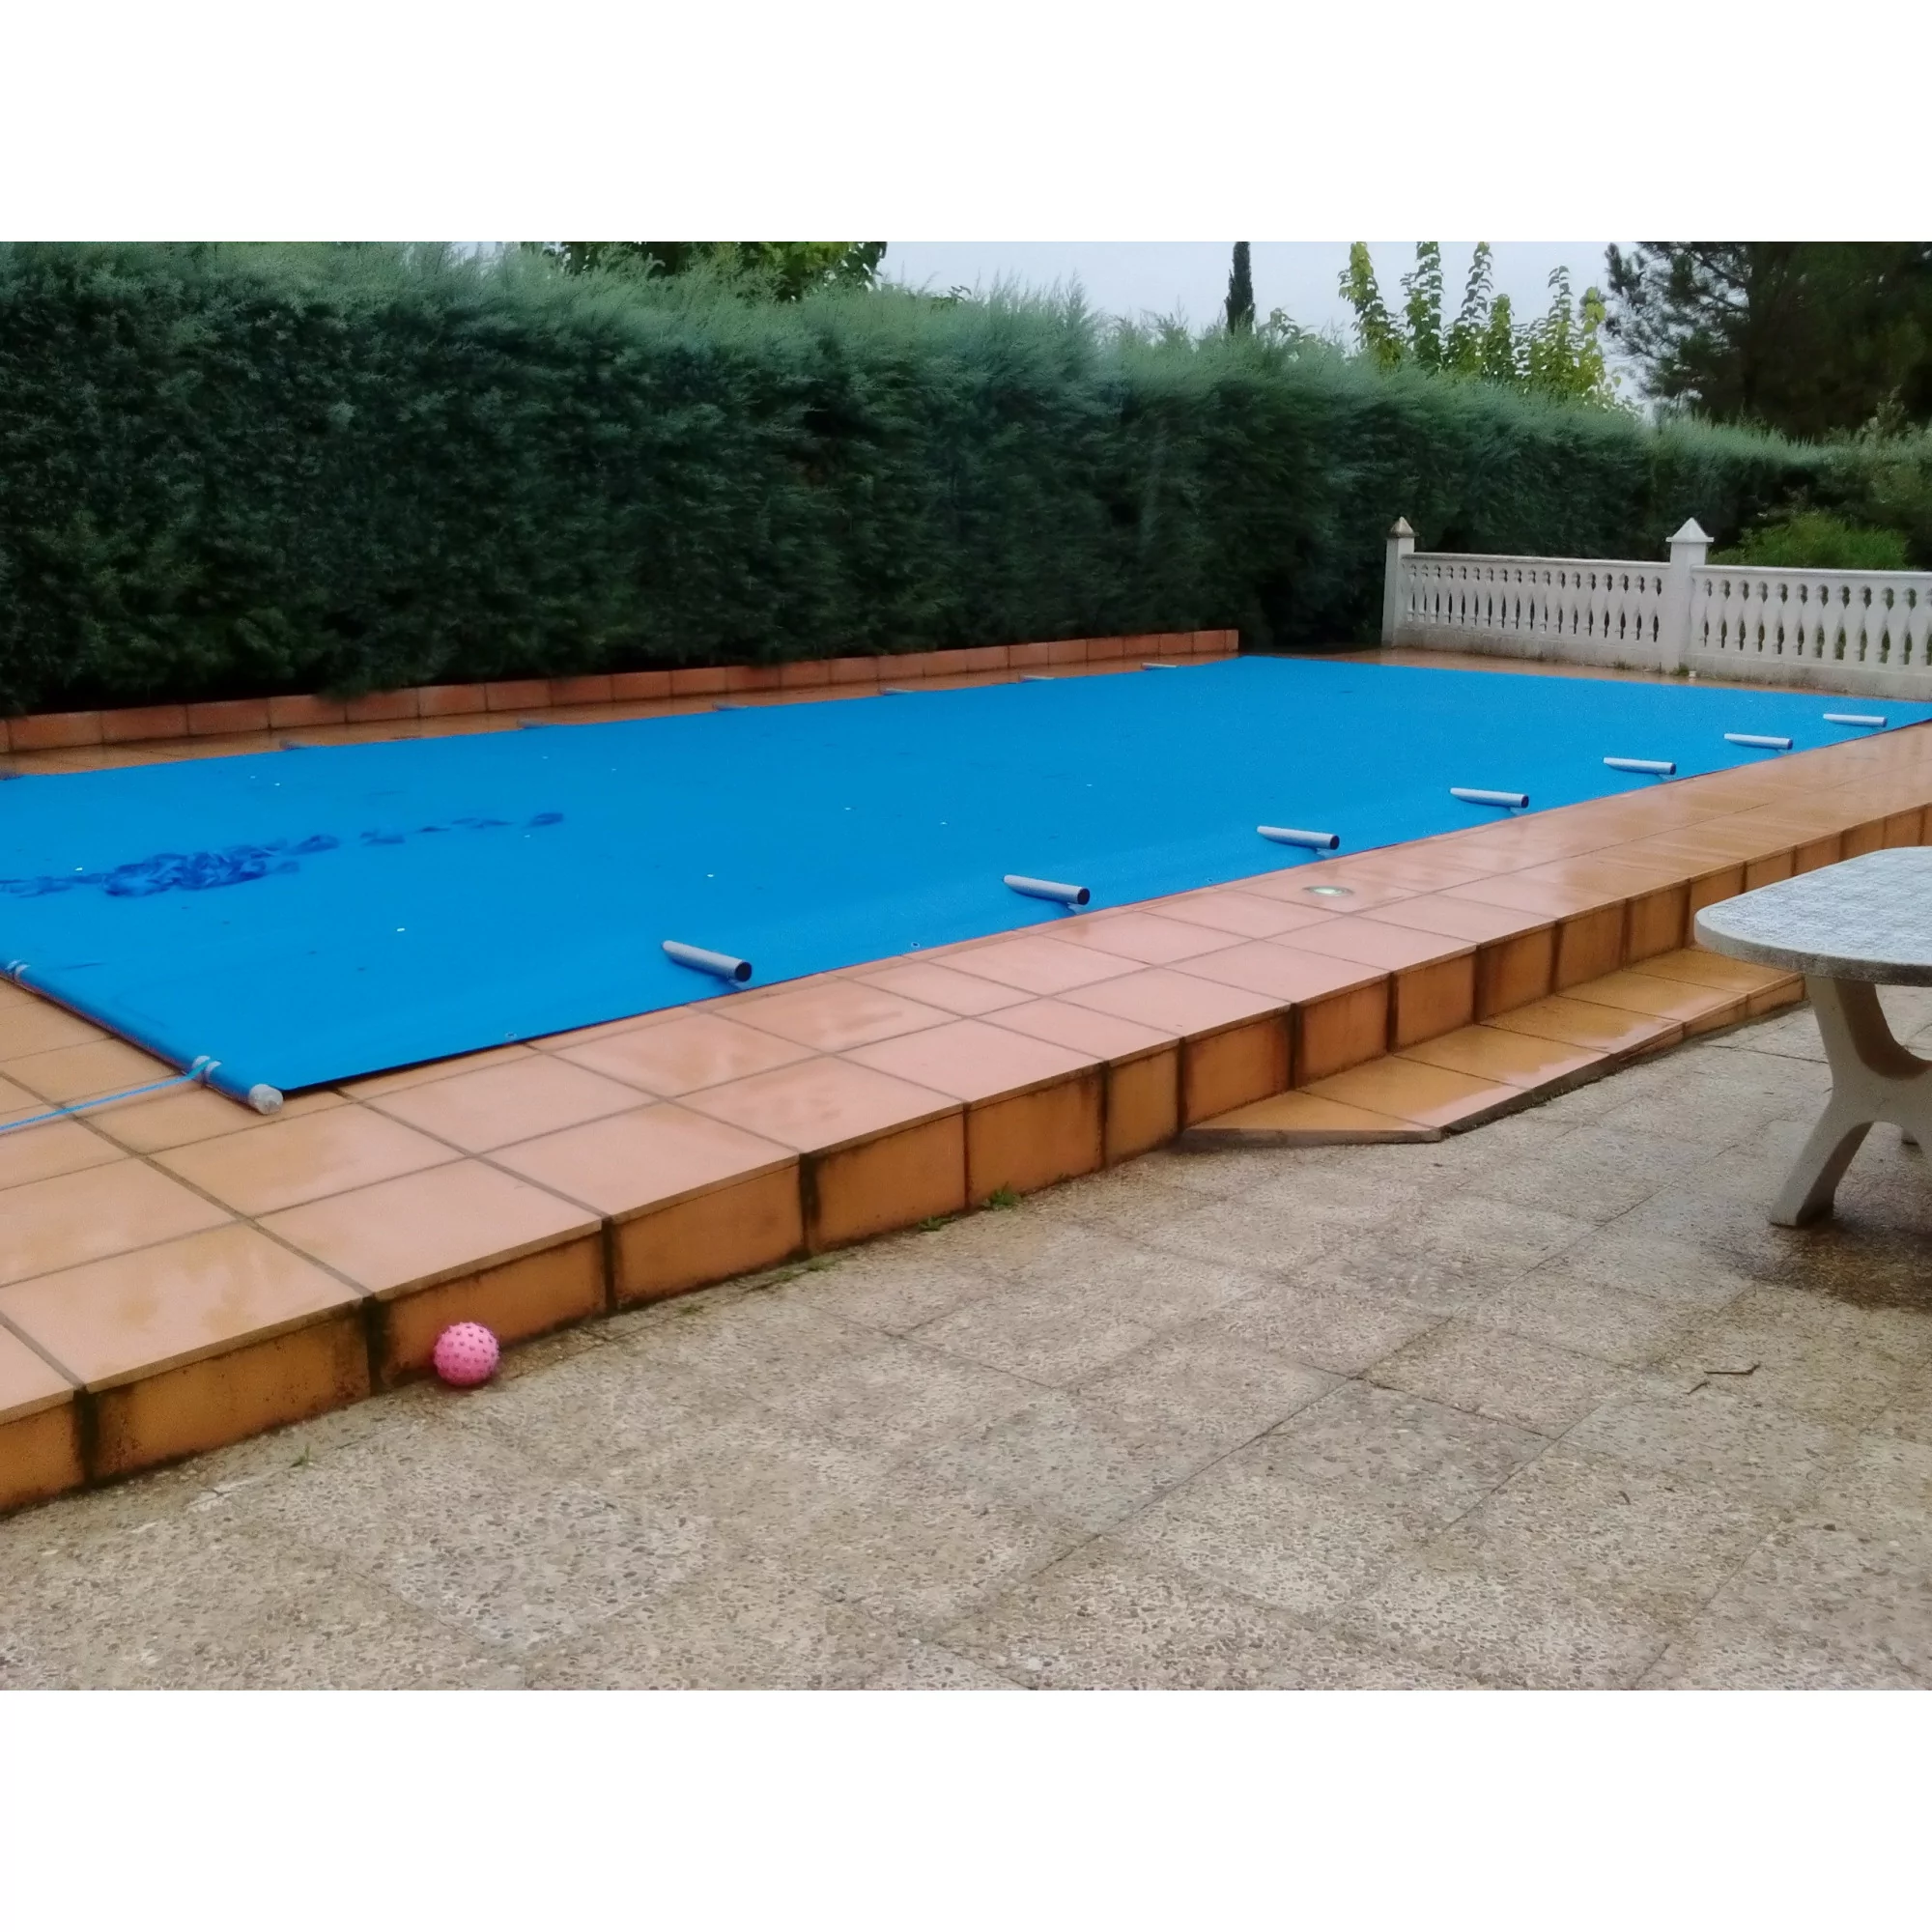 Cobertor de invierno Azul/Negra lona para piscina (6,30 x 3,30 m.)